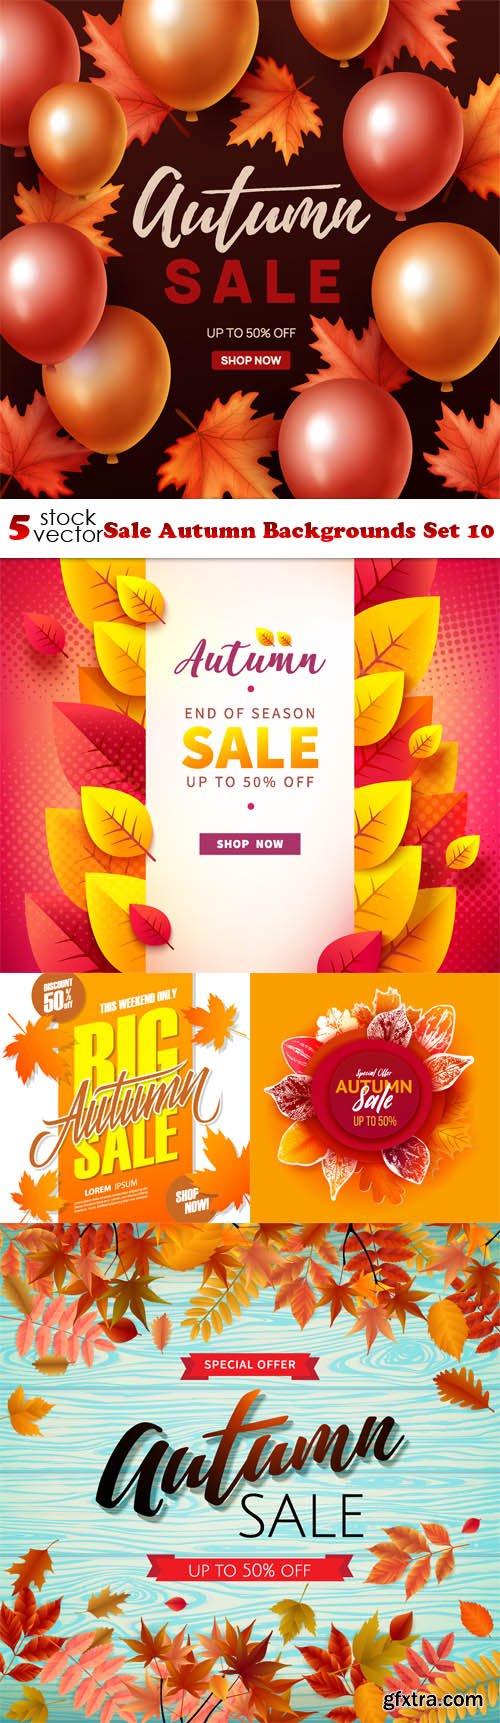 Vectors - Sale Autumn Backgrounds Set 10